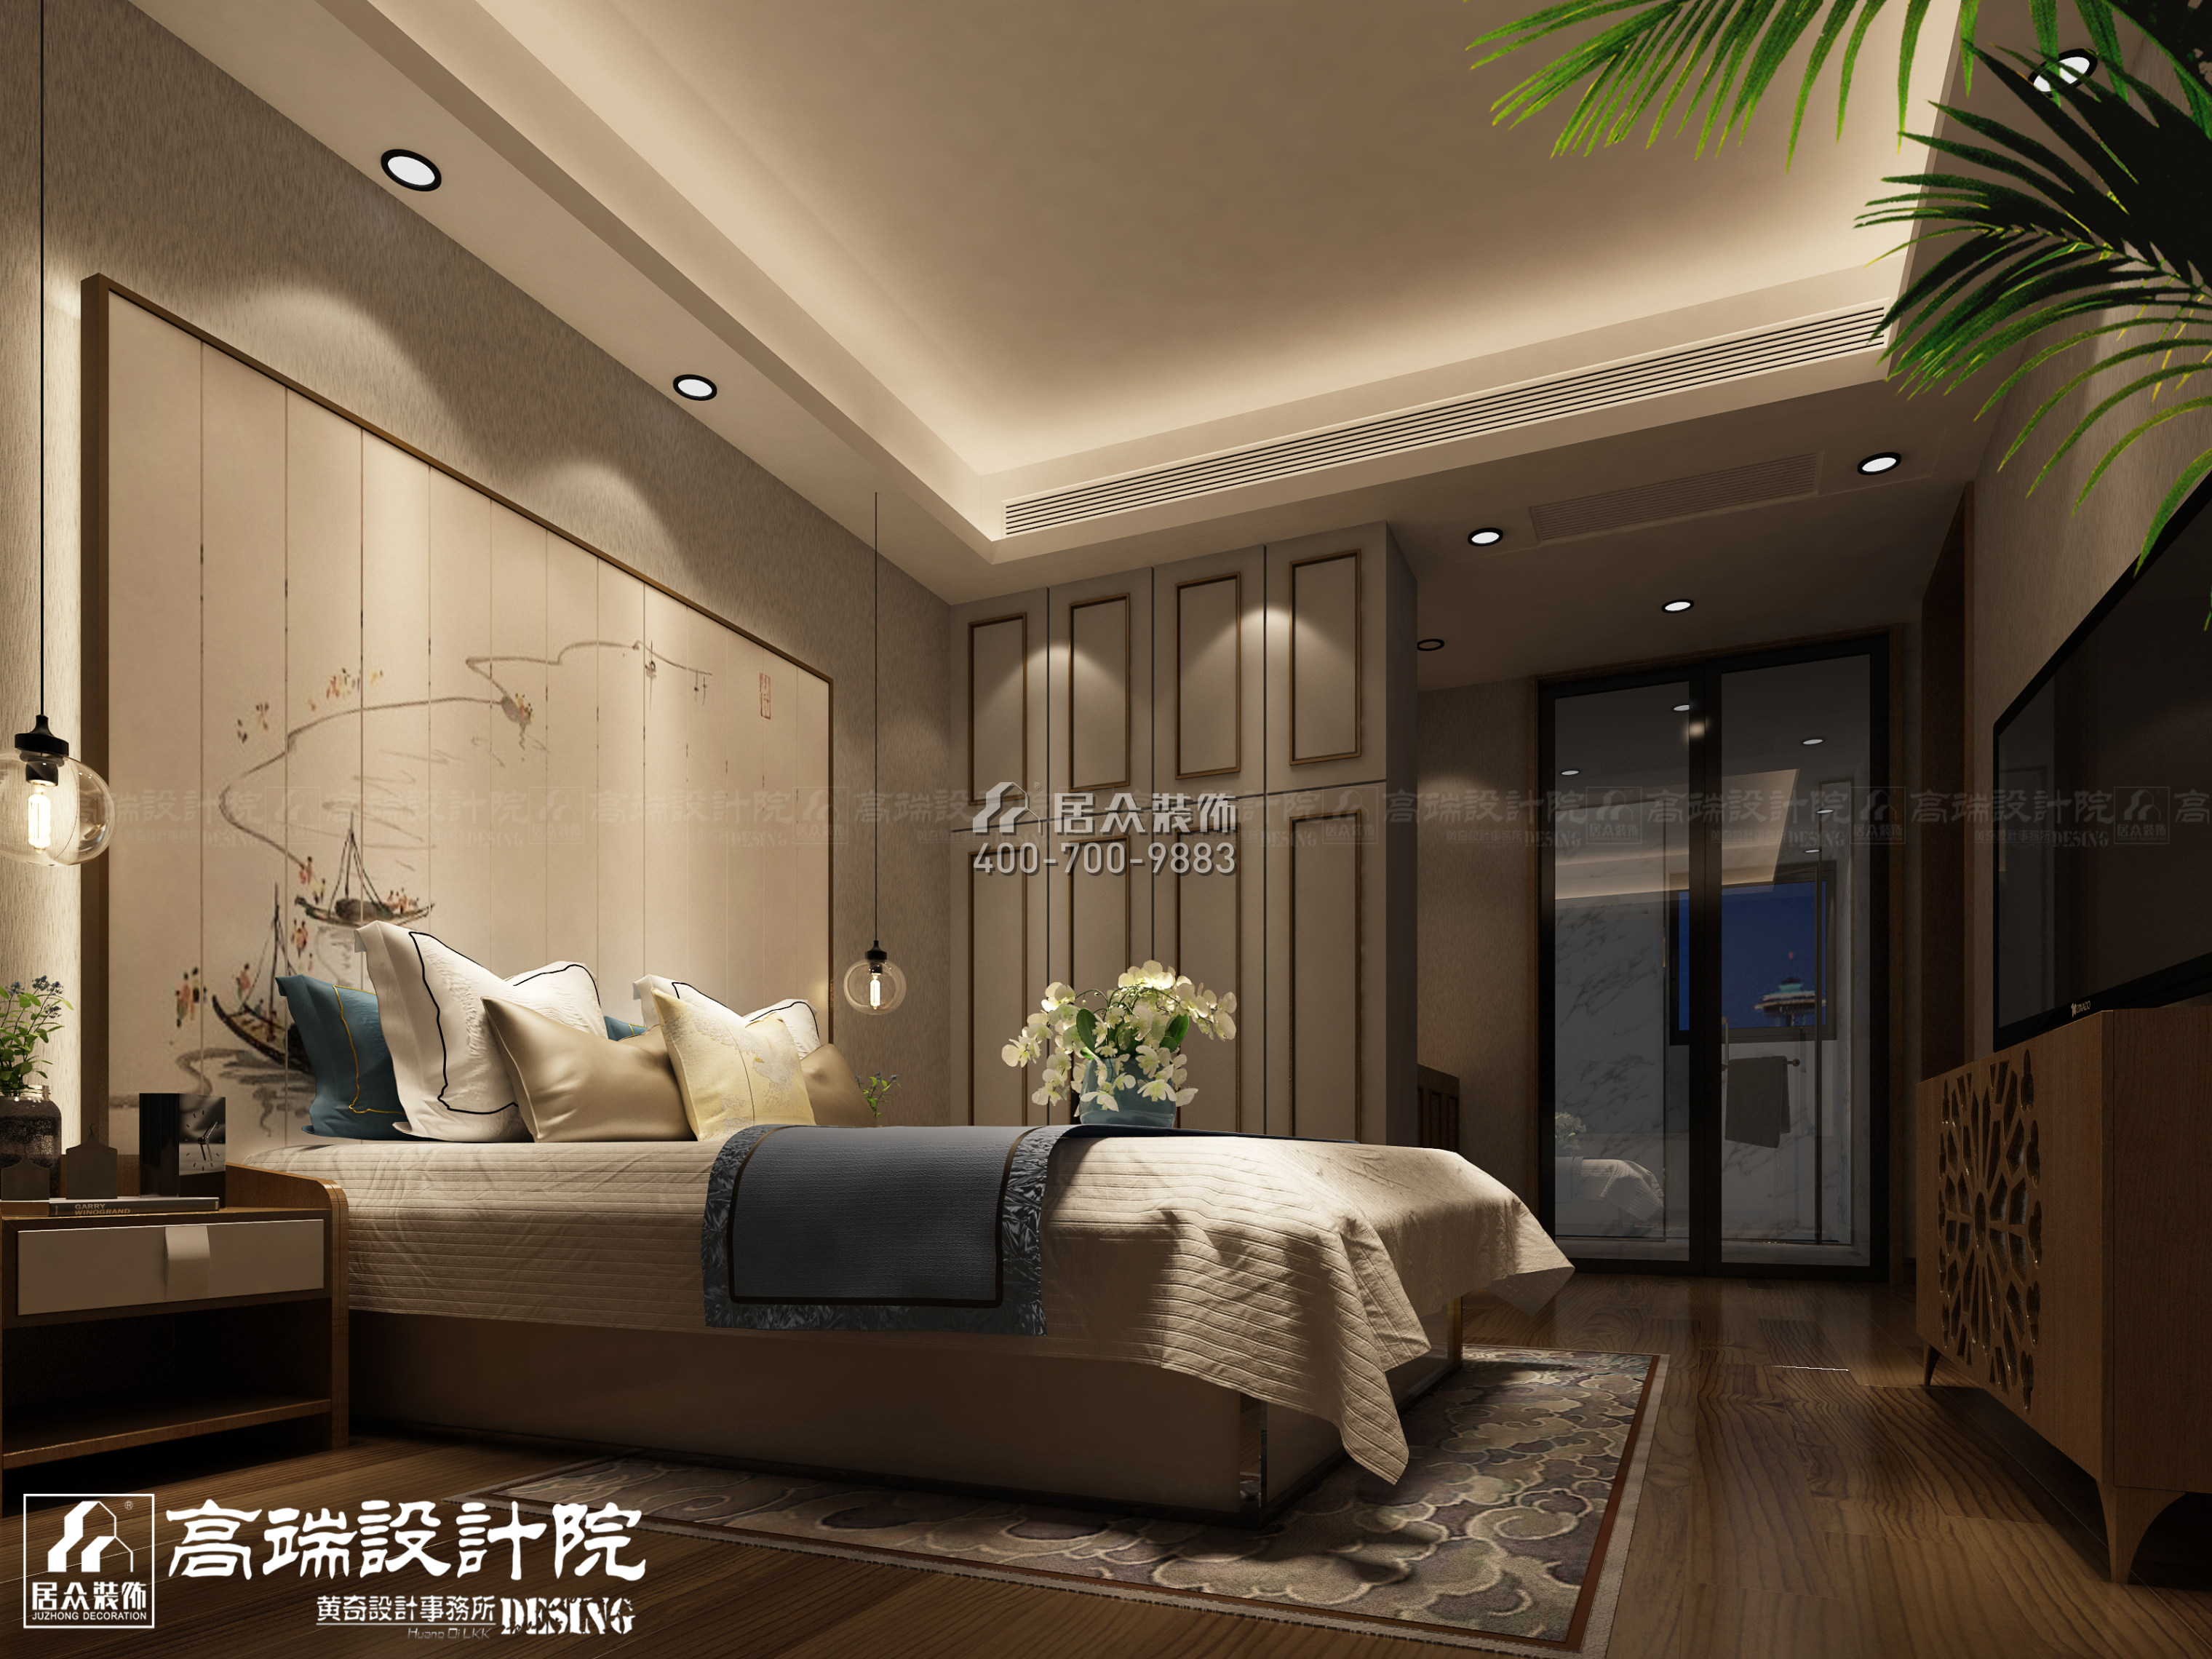 湘江世纪城160平方米中式风格平层户型卧室装修效果图